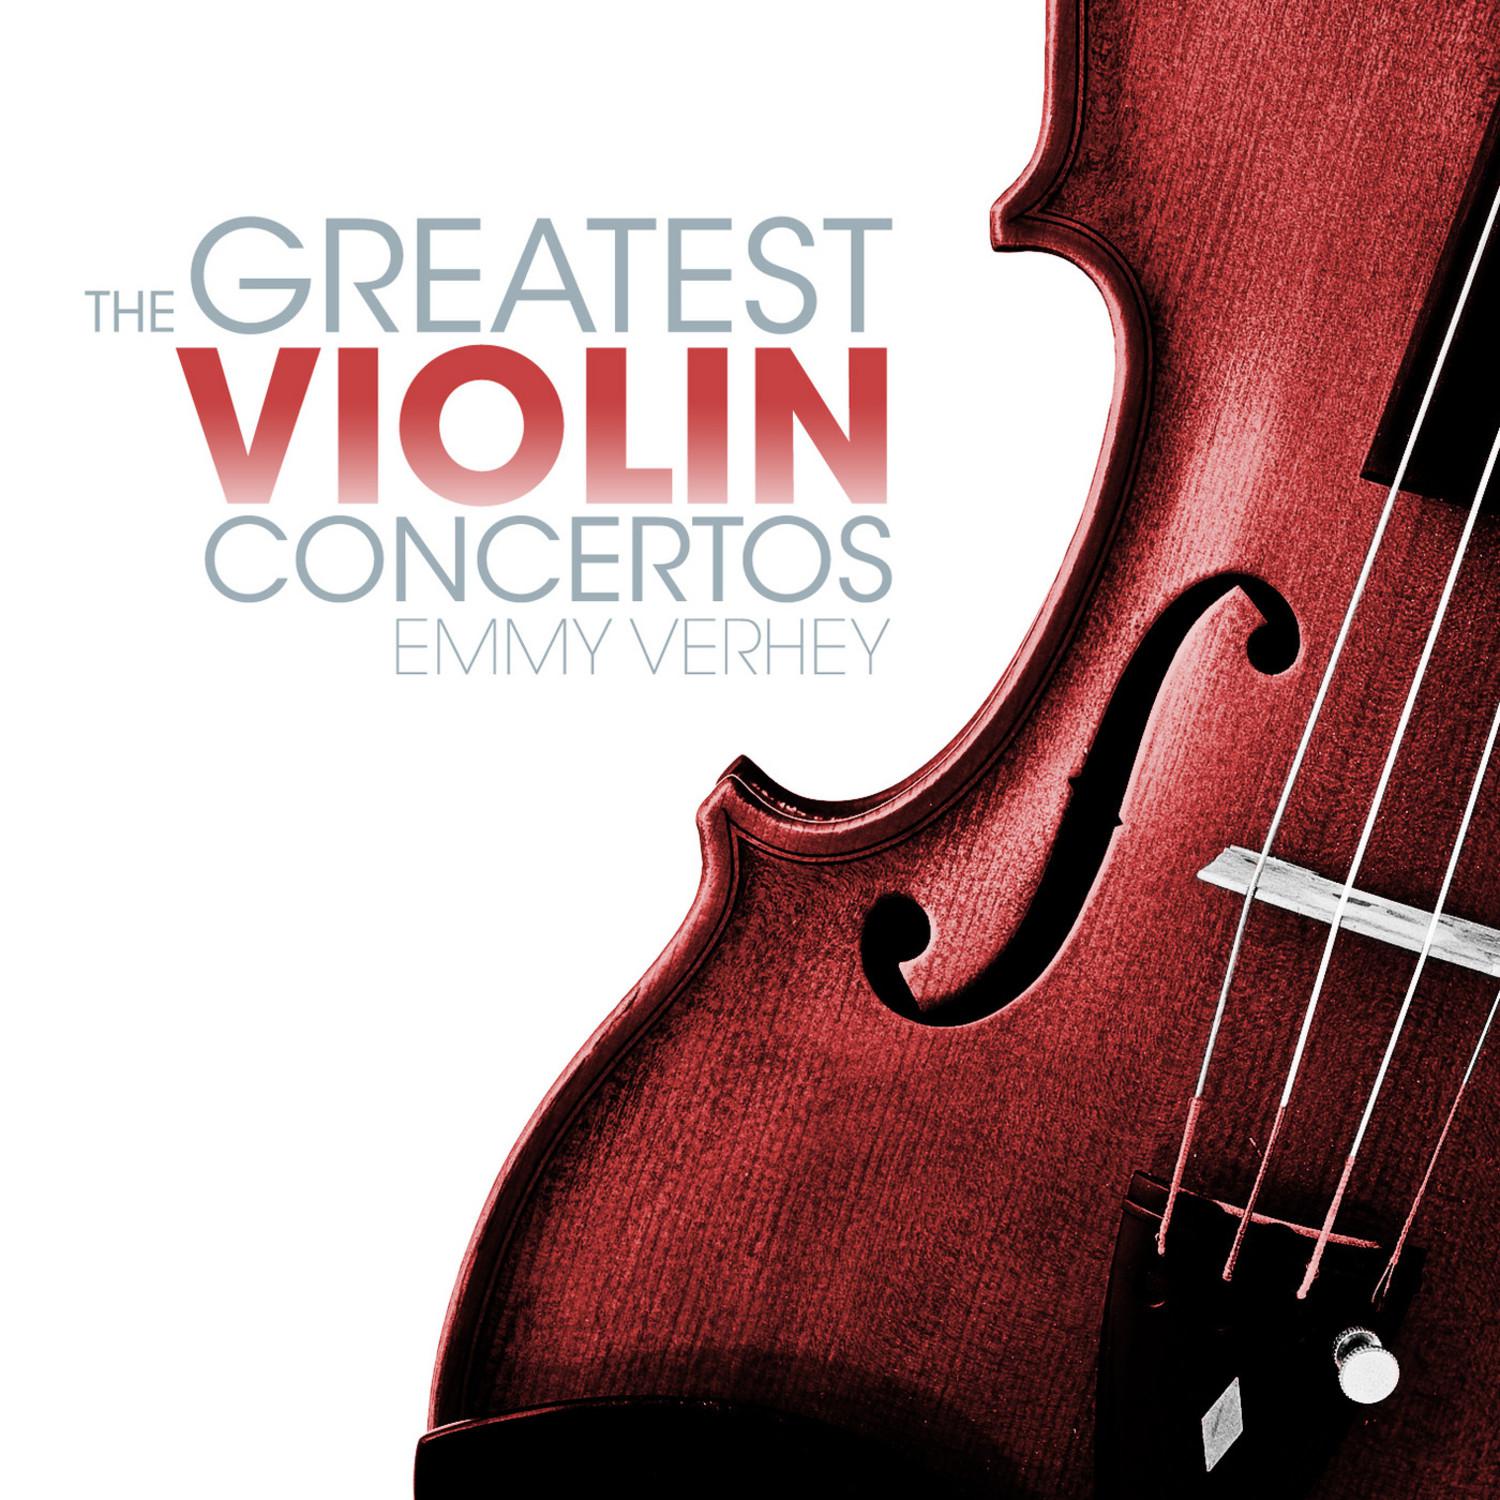 Concerto No. 2 in D Major for Violin and Orchestra, K. 211: I. Allegro moderato